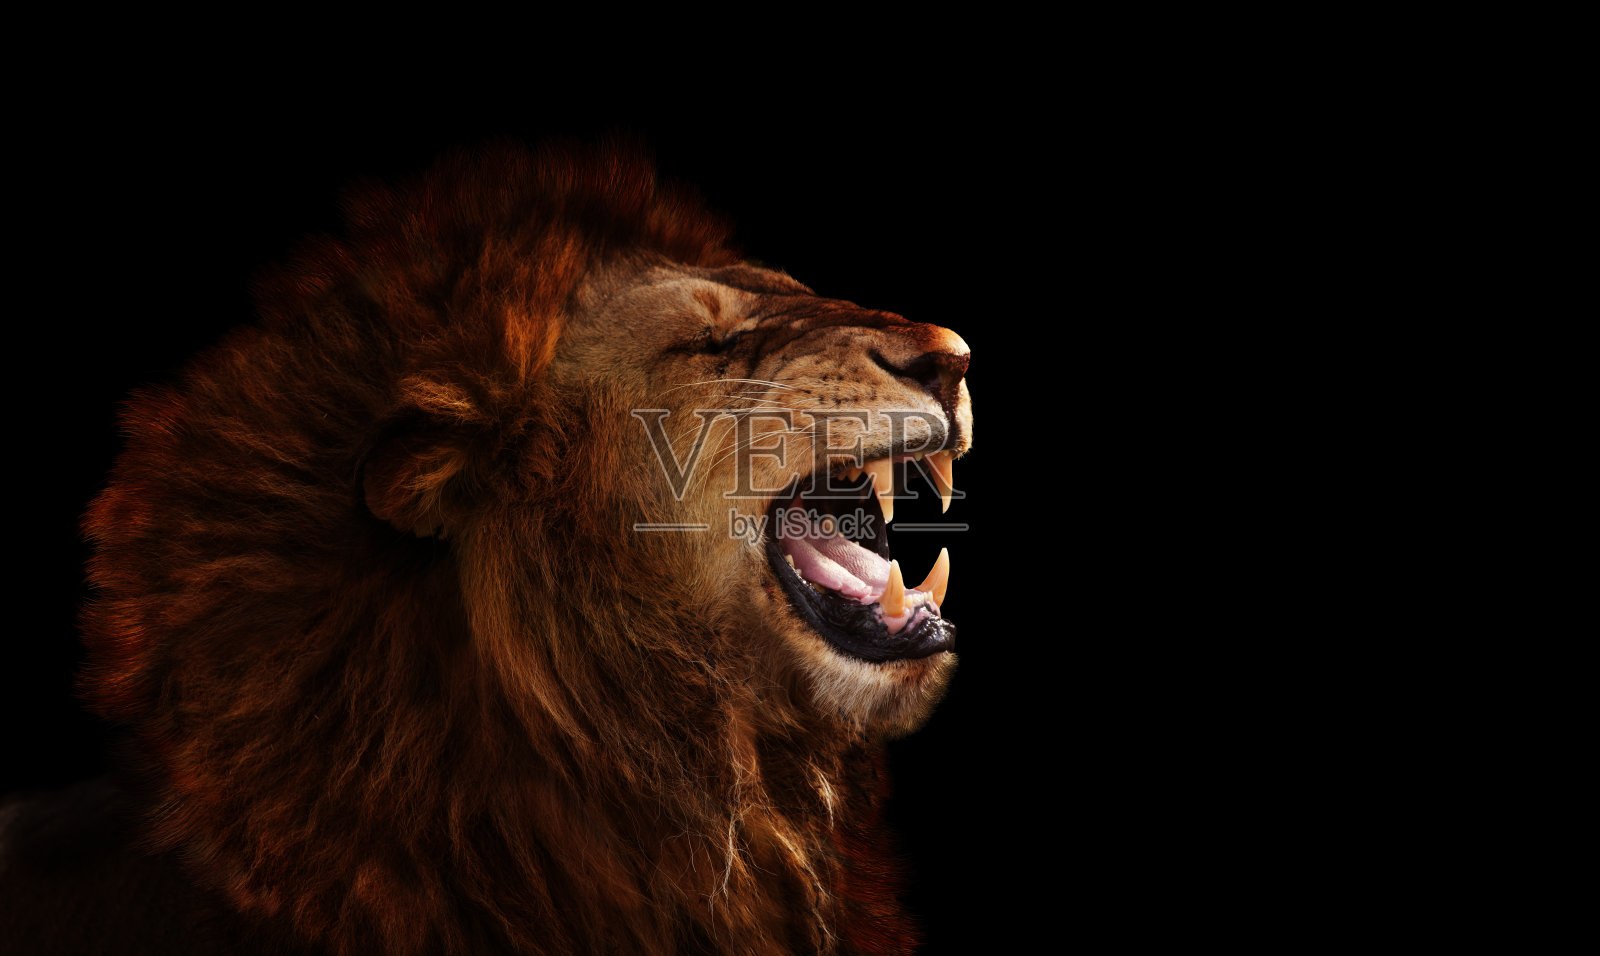 咆哮的狮子 库存照片. 图片 包括有 闹事, 通配, 狮子, 国王, 野生生物, 舌头, 动物学, 鬃毛, 野兽 - 7564772